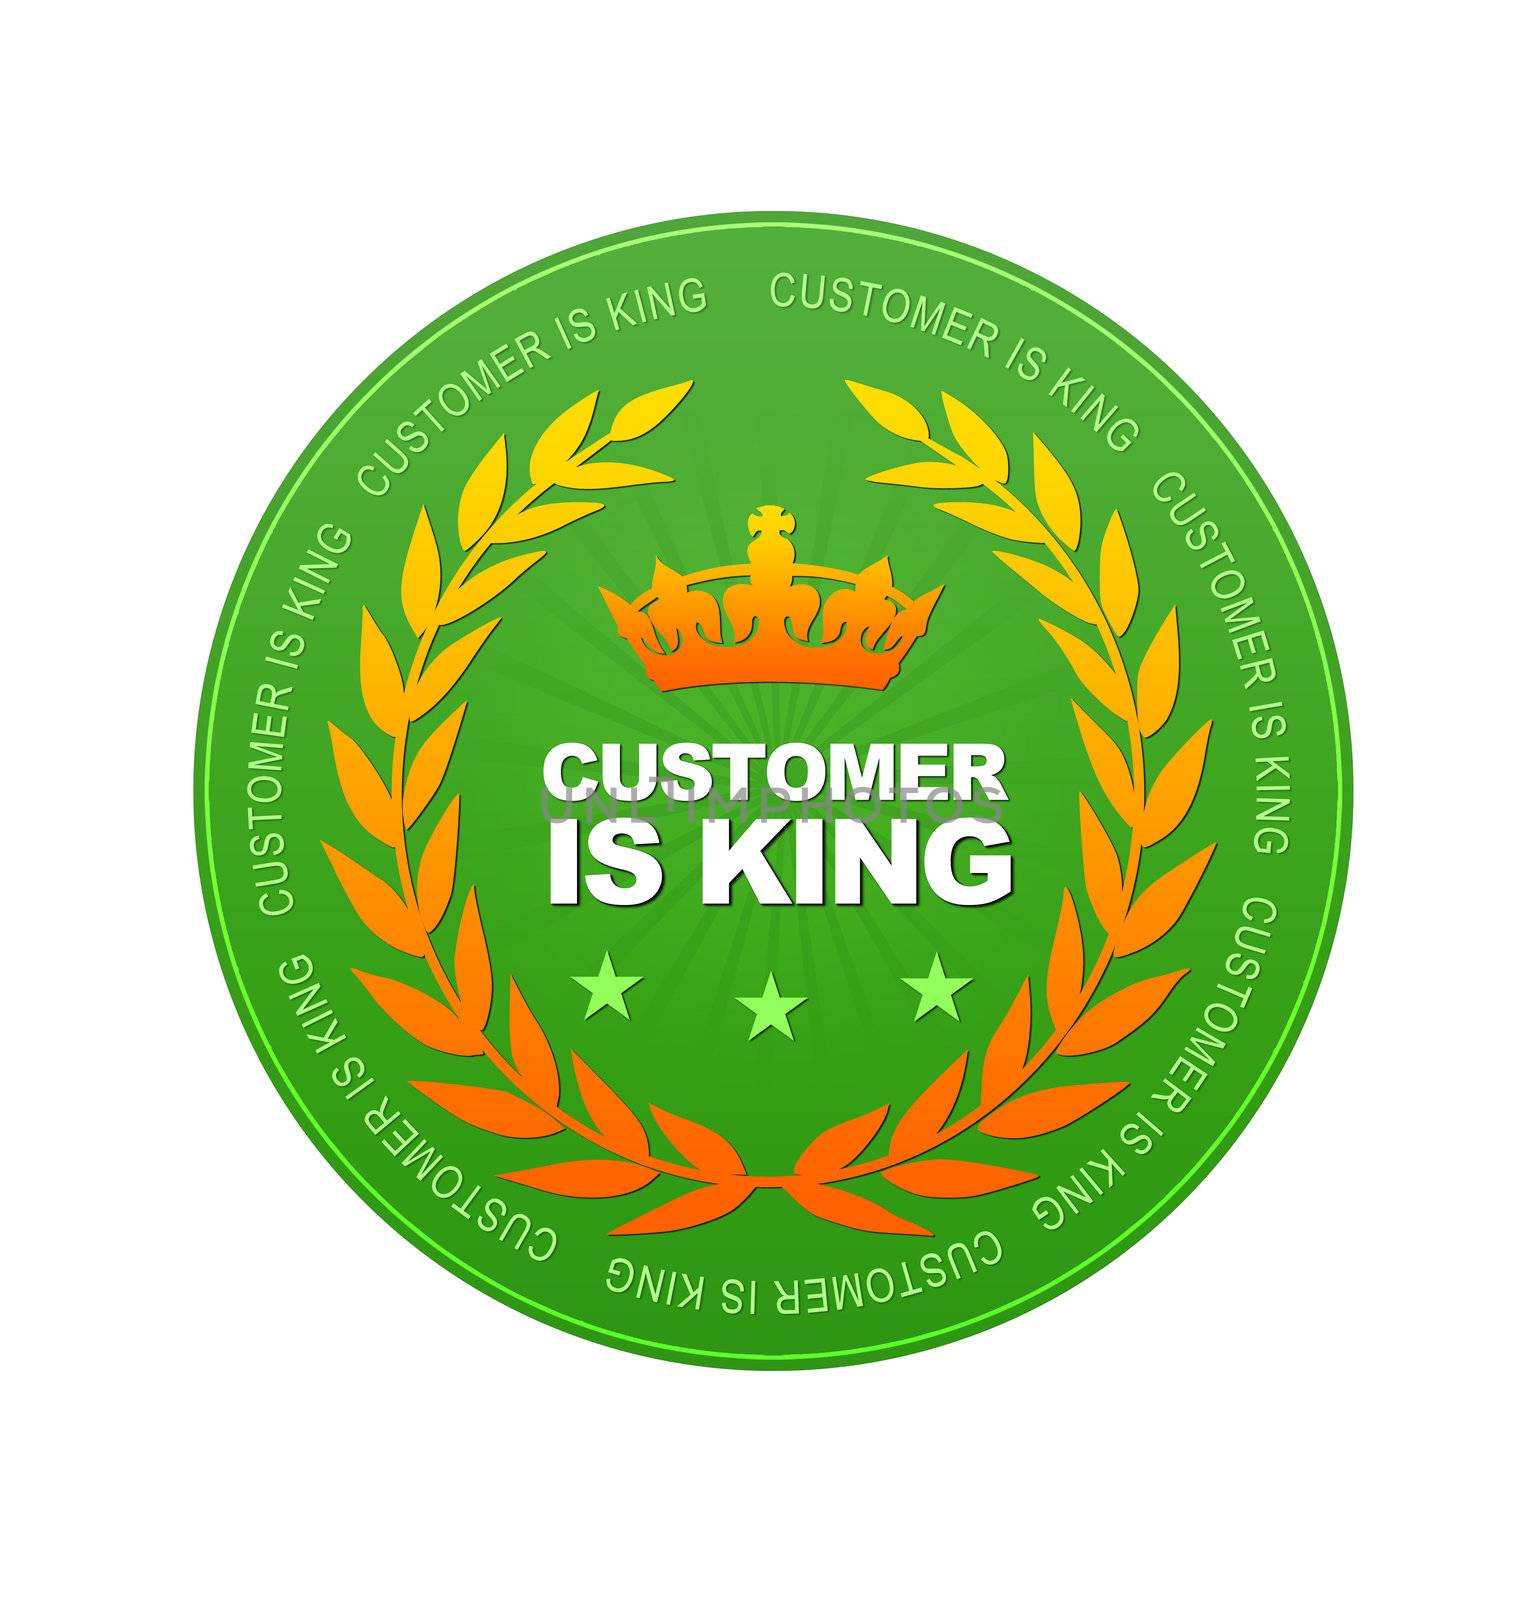 Customer Is King by kbuntu